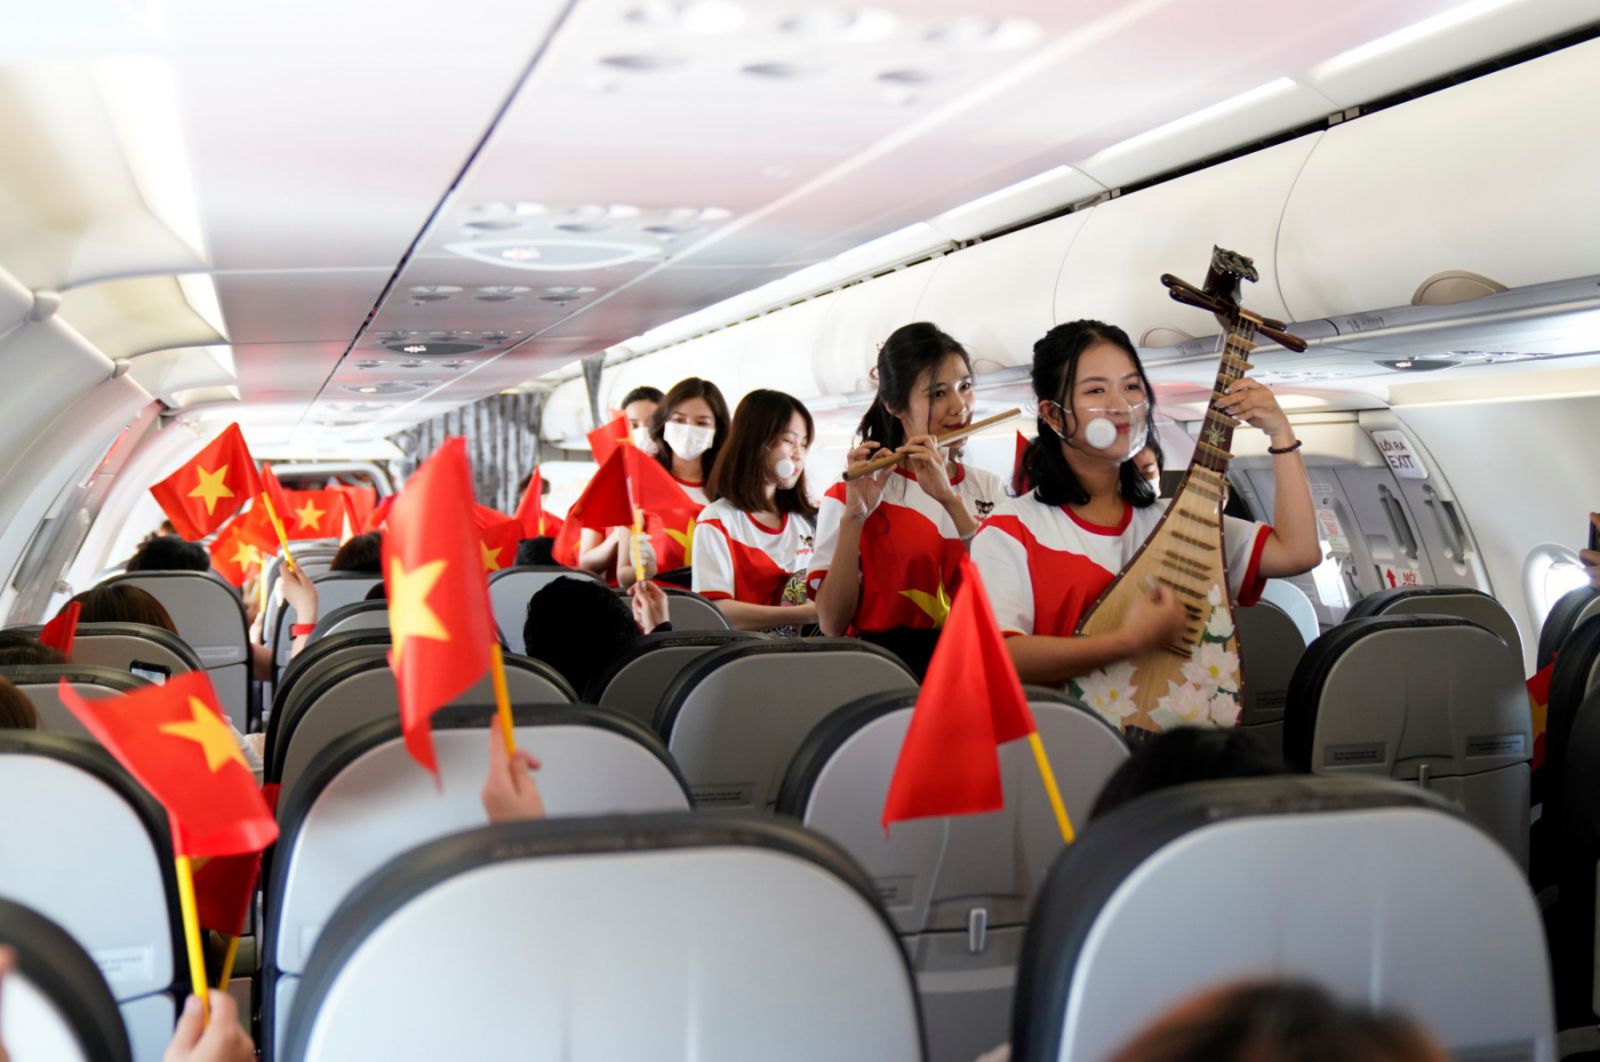 Sự kết nối của sức trẻ, năng động và sáng tạo cùng các nhạc cụ truyền thống vang lên trên tàu bay ở độ cao 10.000 mét mang tới trải nghiệm hoàn toàn khác biệt cho khách hàng.